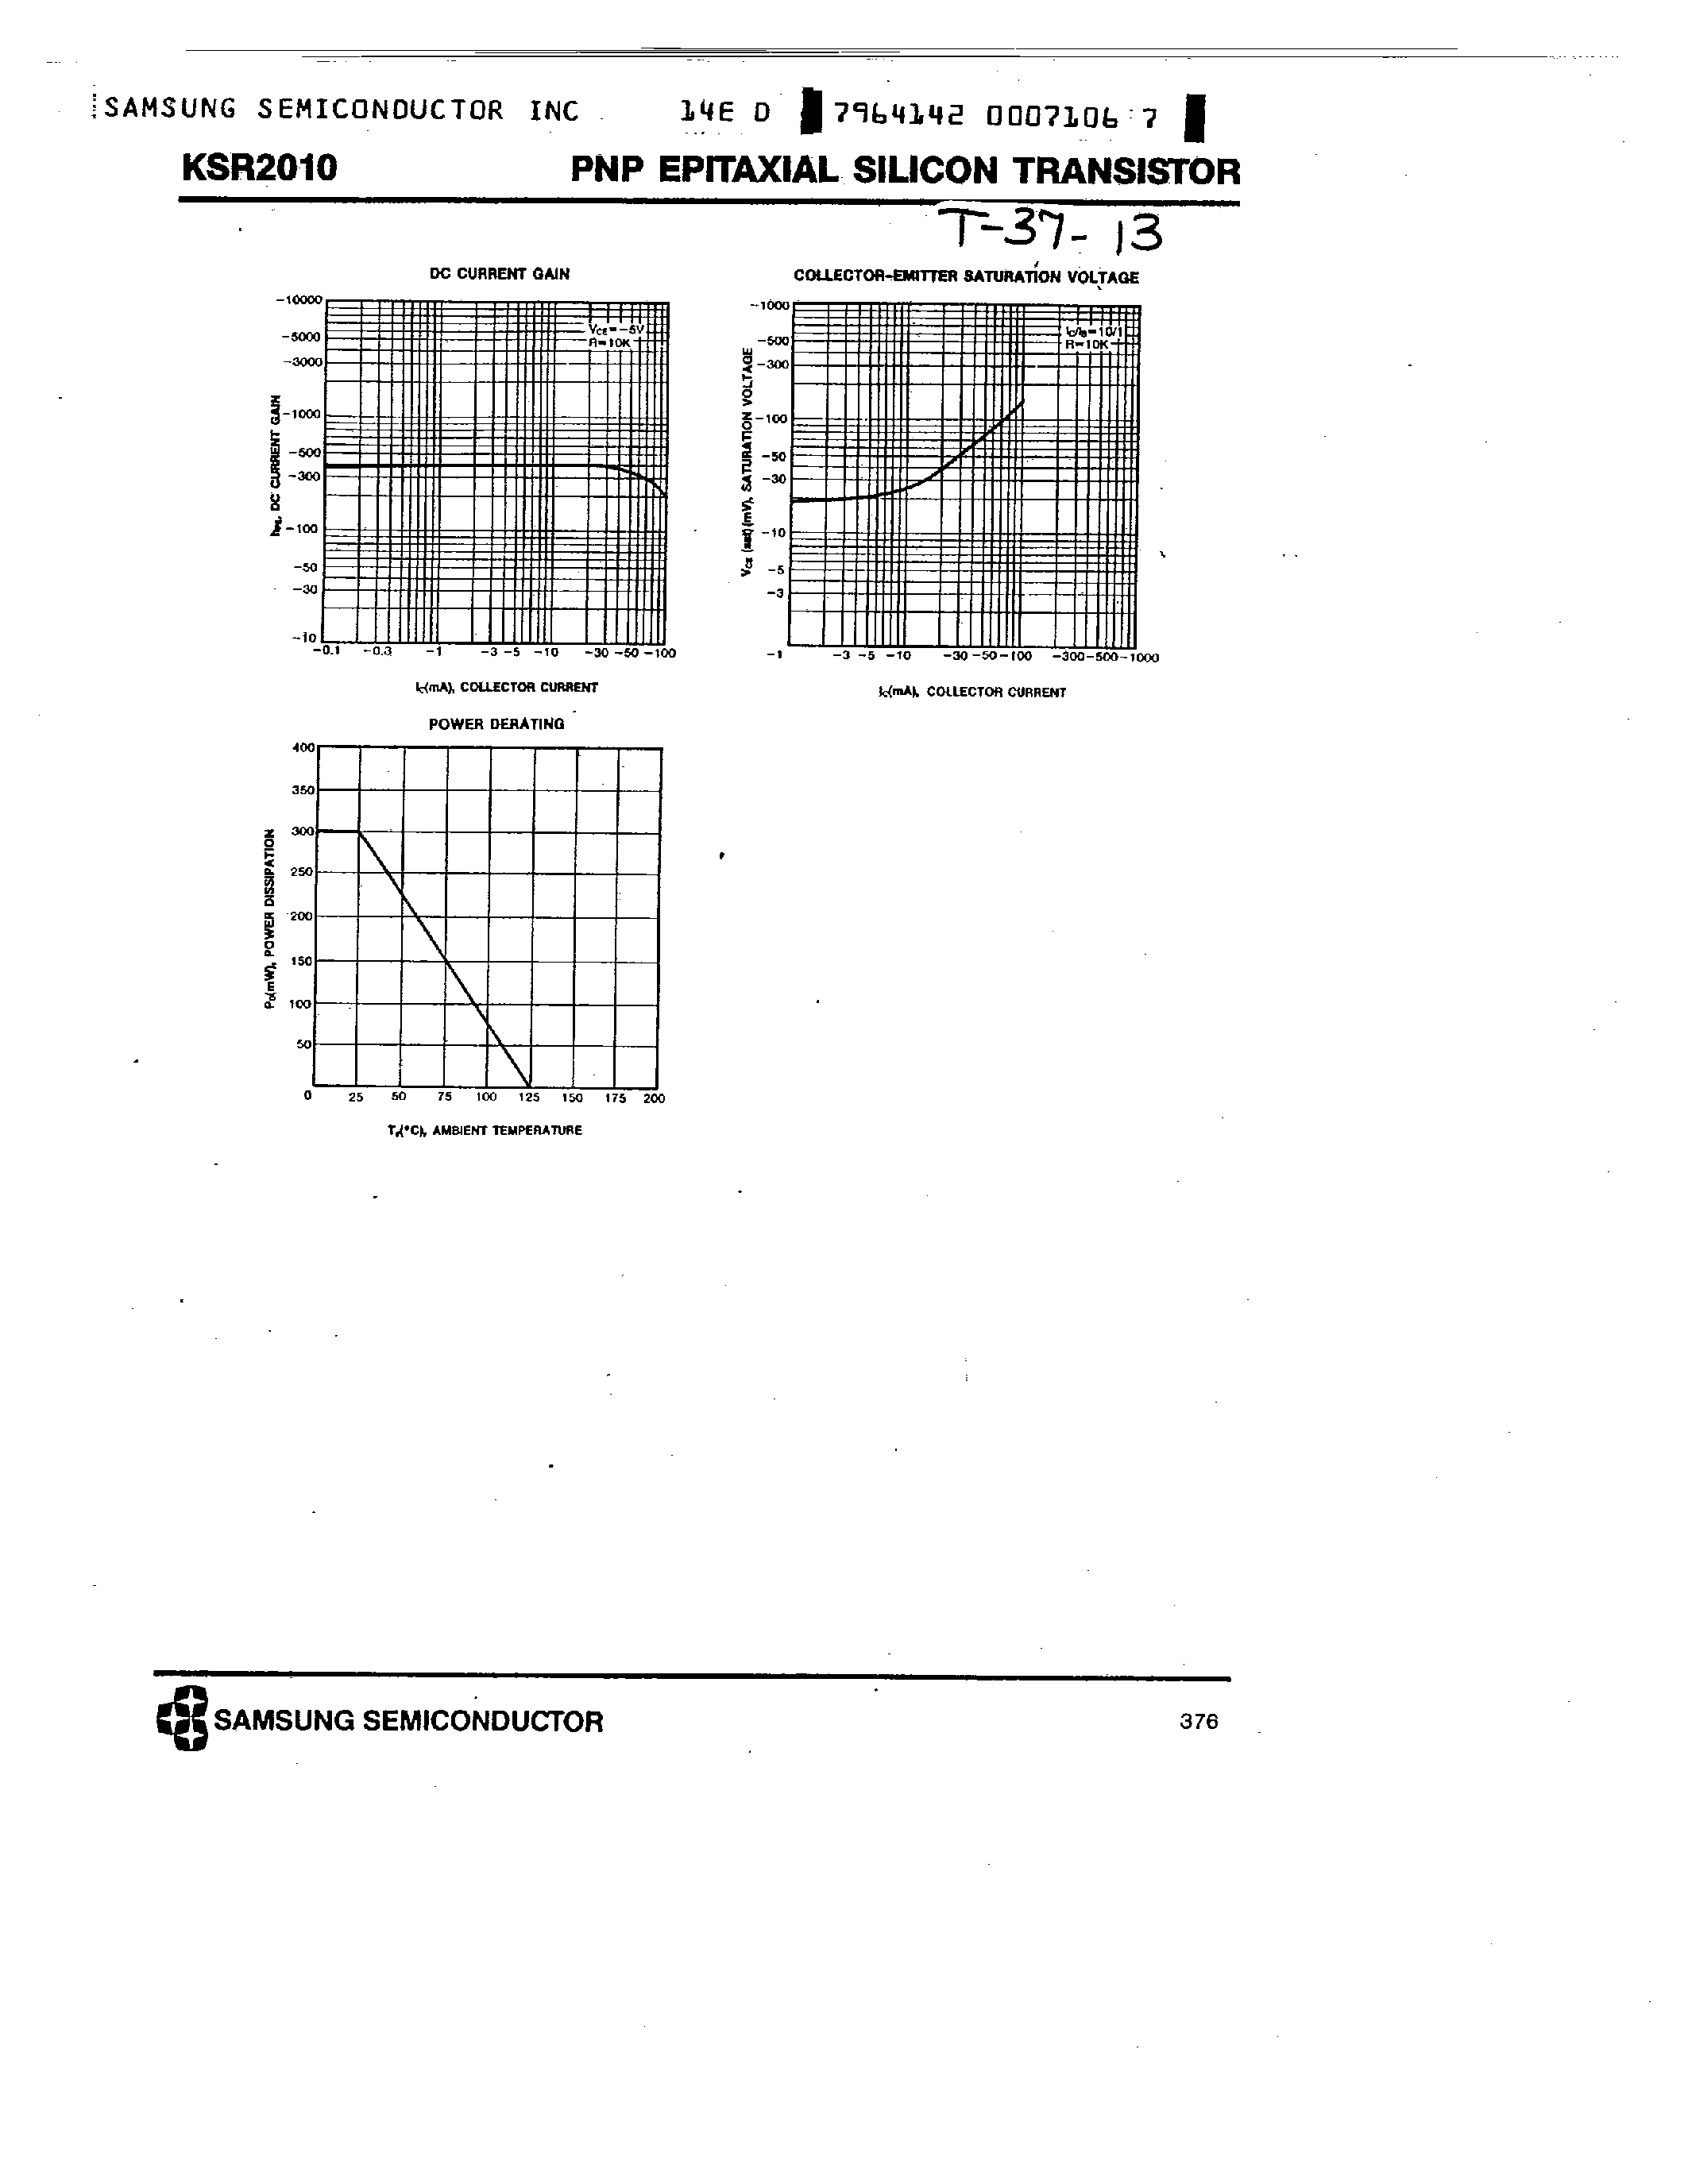 Datasheet KSR2010 - PNP (SWITCHING APPLICATION) page 2